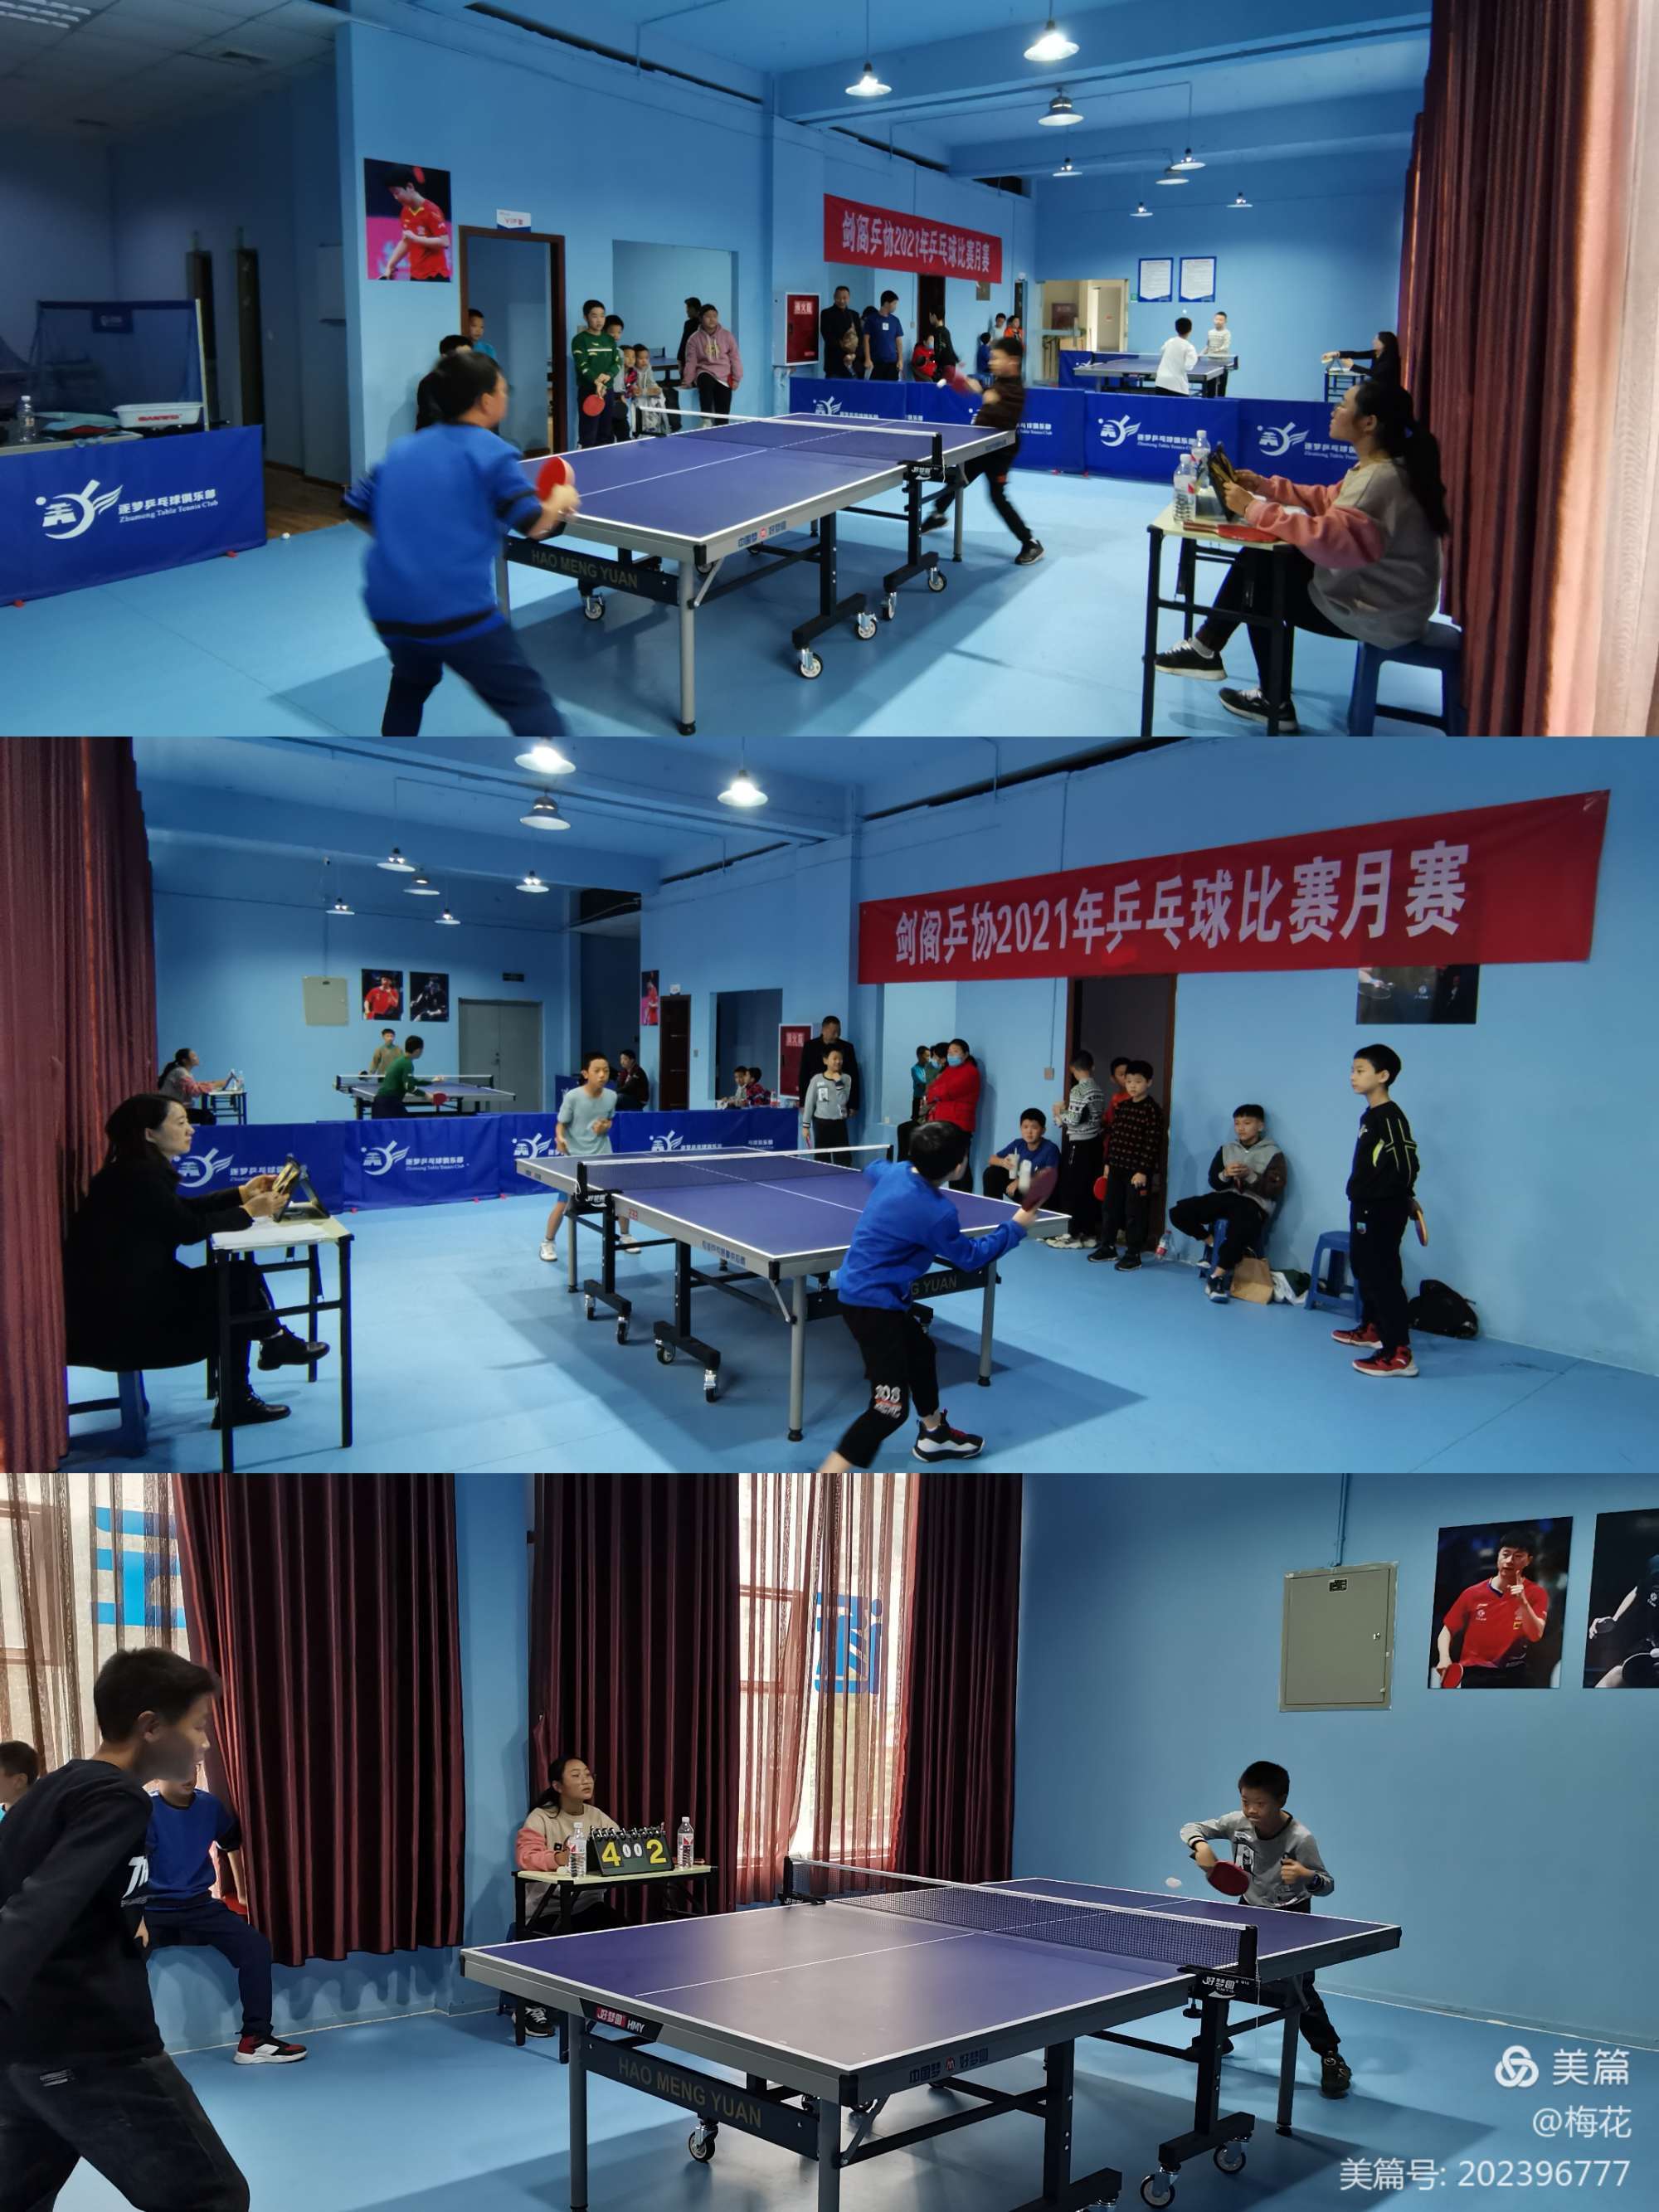 雏鹰展翅 初现光芒 ——2021年剑阁县体育中心举办小学组乒乓球月赛